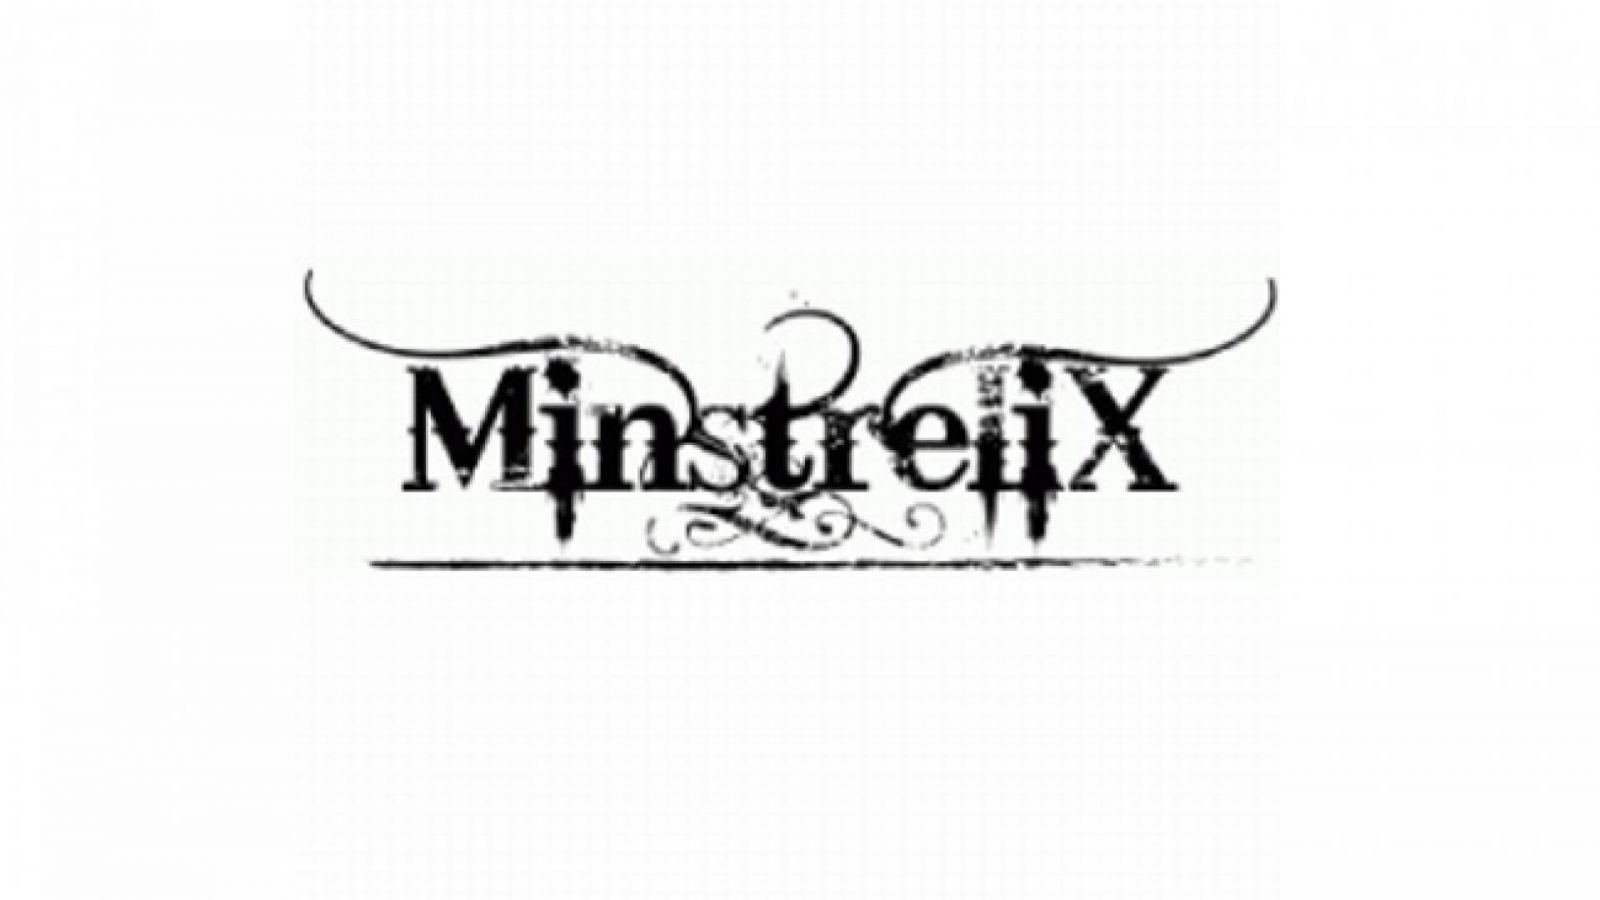 Neues Album von MinstreliX © MinstreliX. All rights reserved.